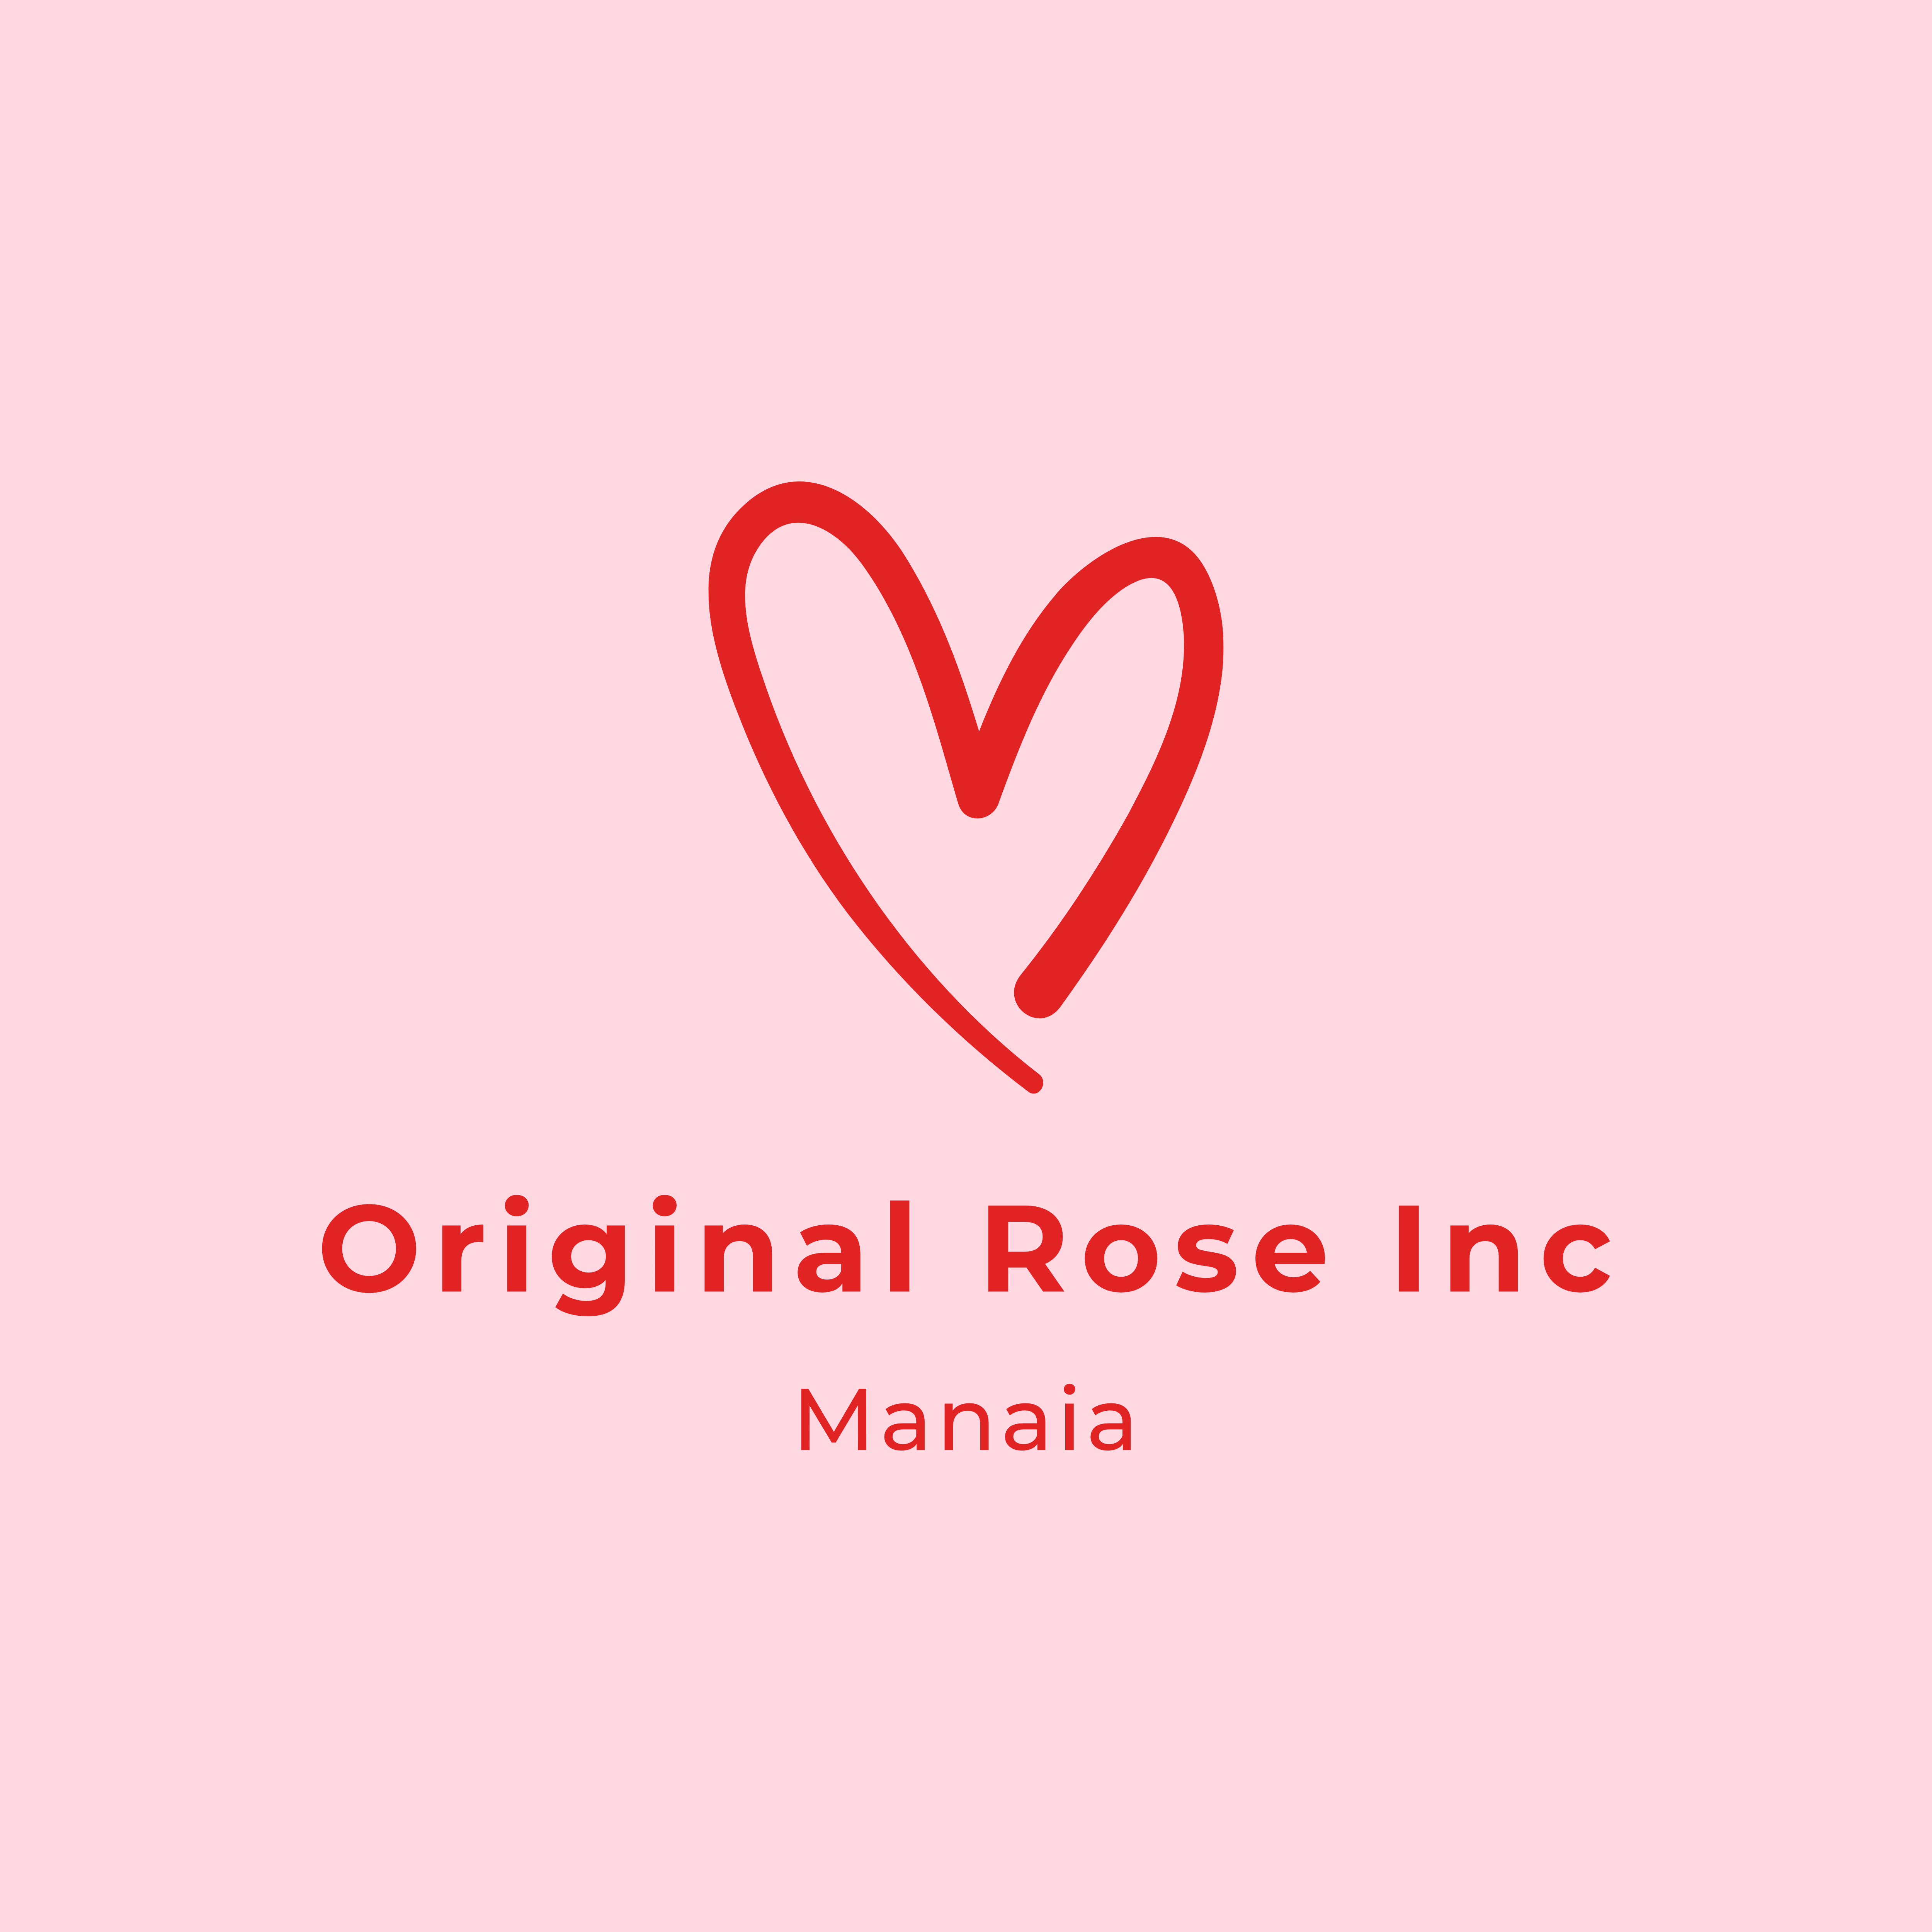 Original Rose Inc